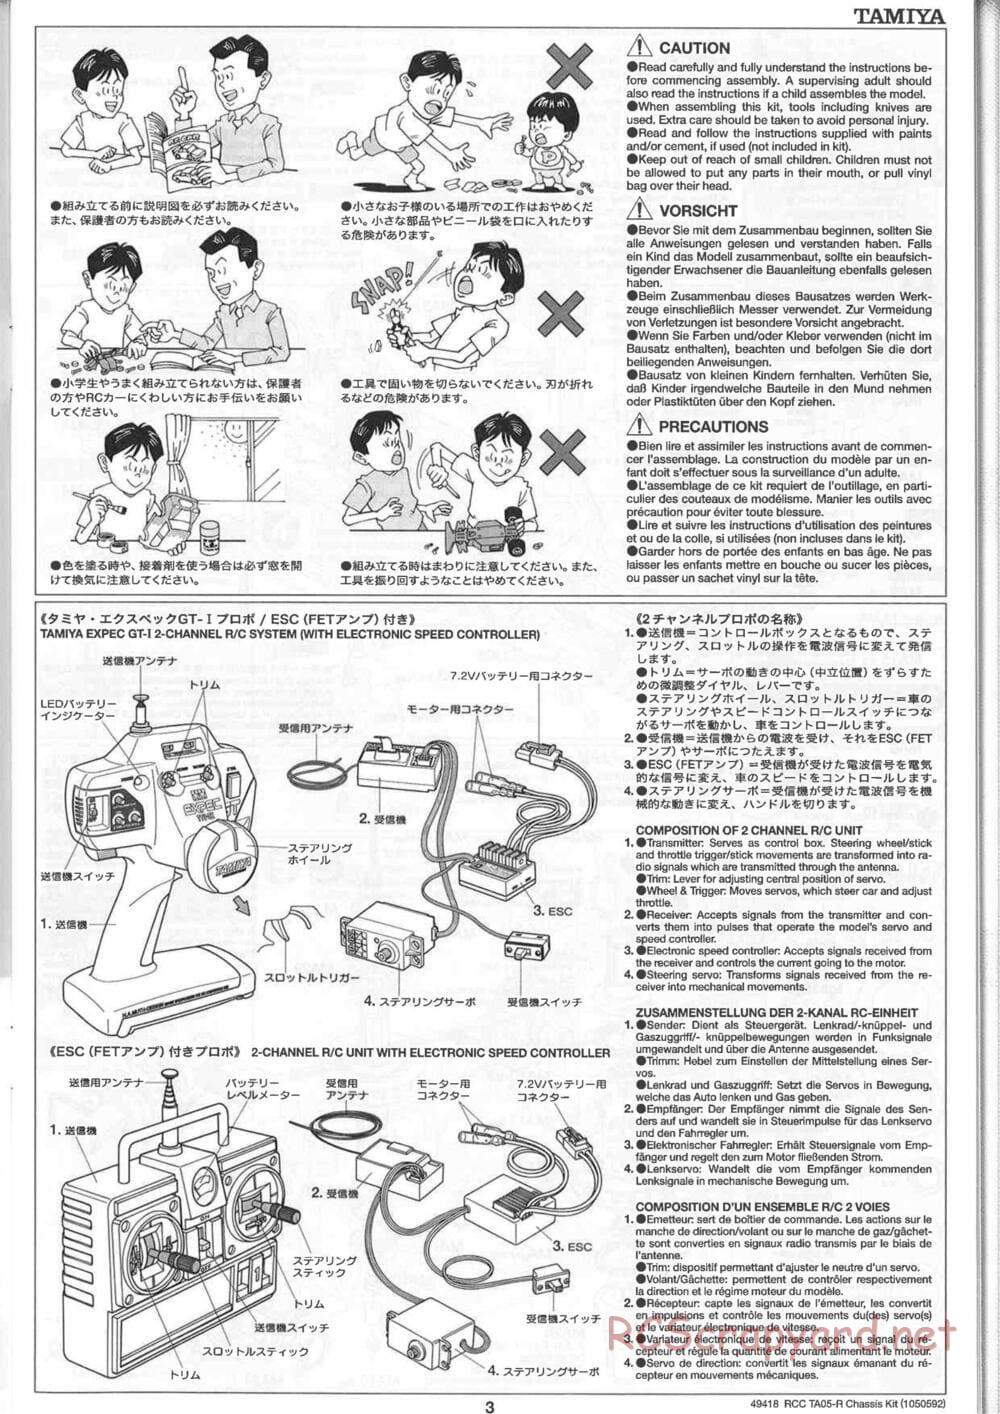 Tamiya - TA05-R Chassis - Manual - Page 3